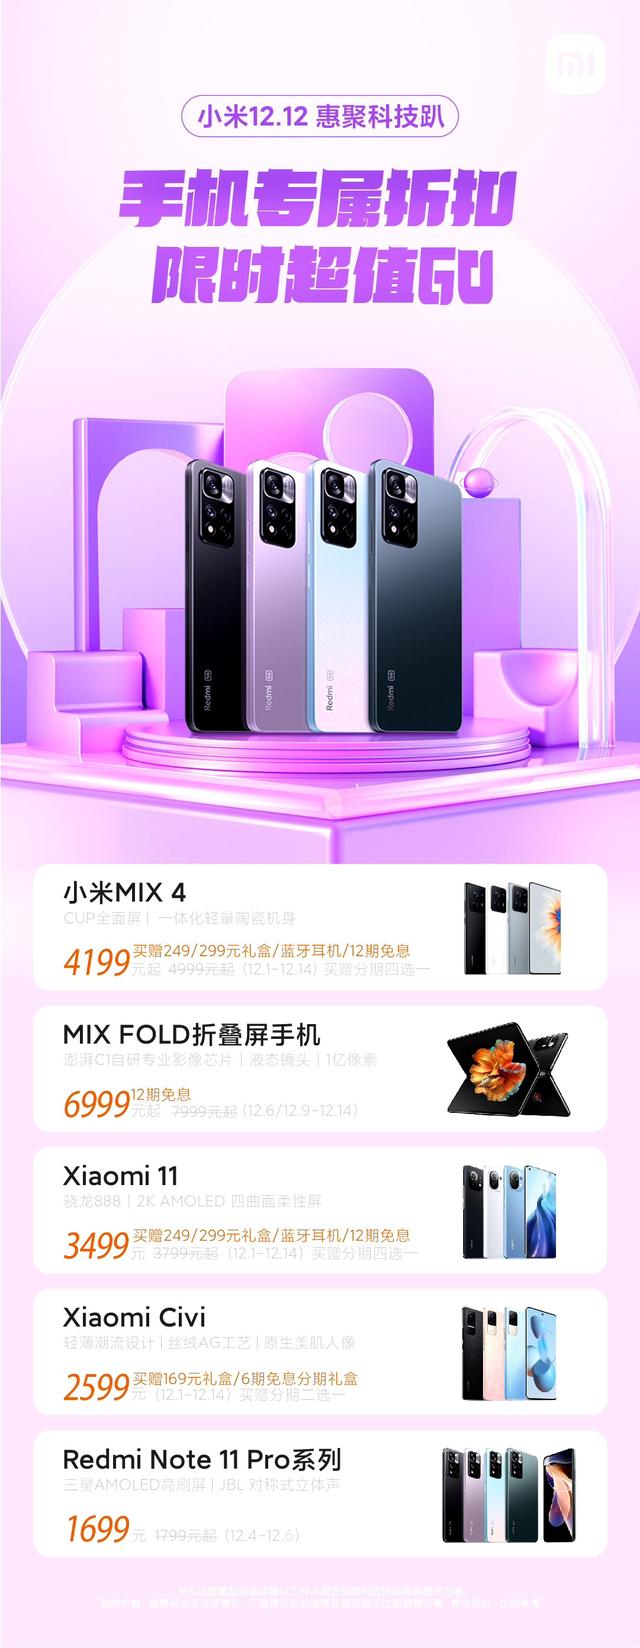 小米手机公布双 12 优惠活动：MIX 4 4199元起，赠礼盒、蓝牙耳机